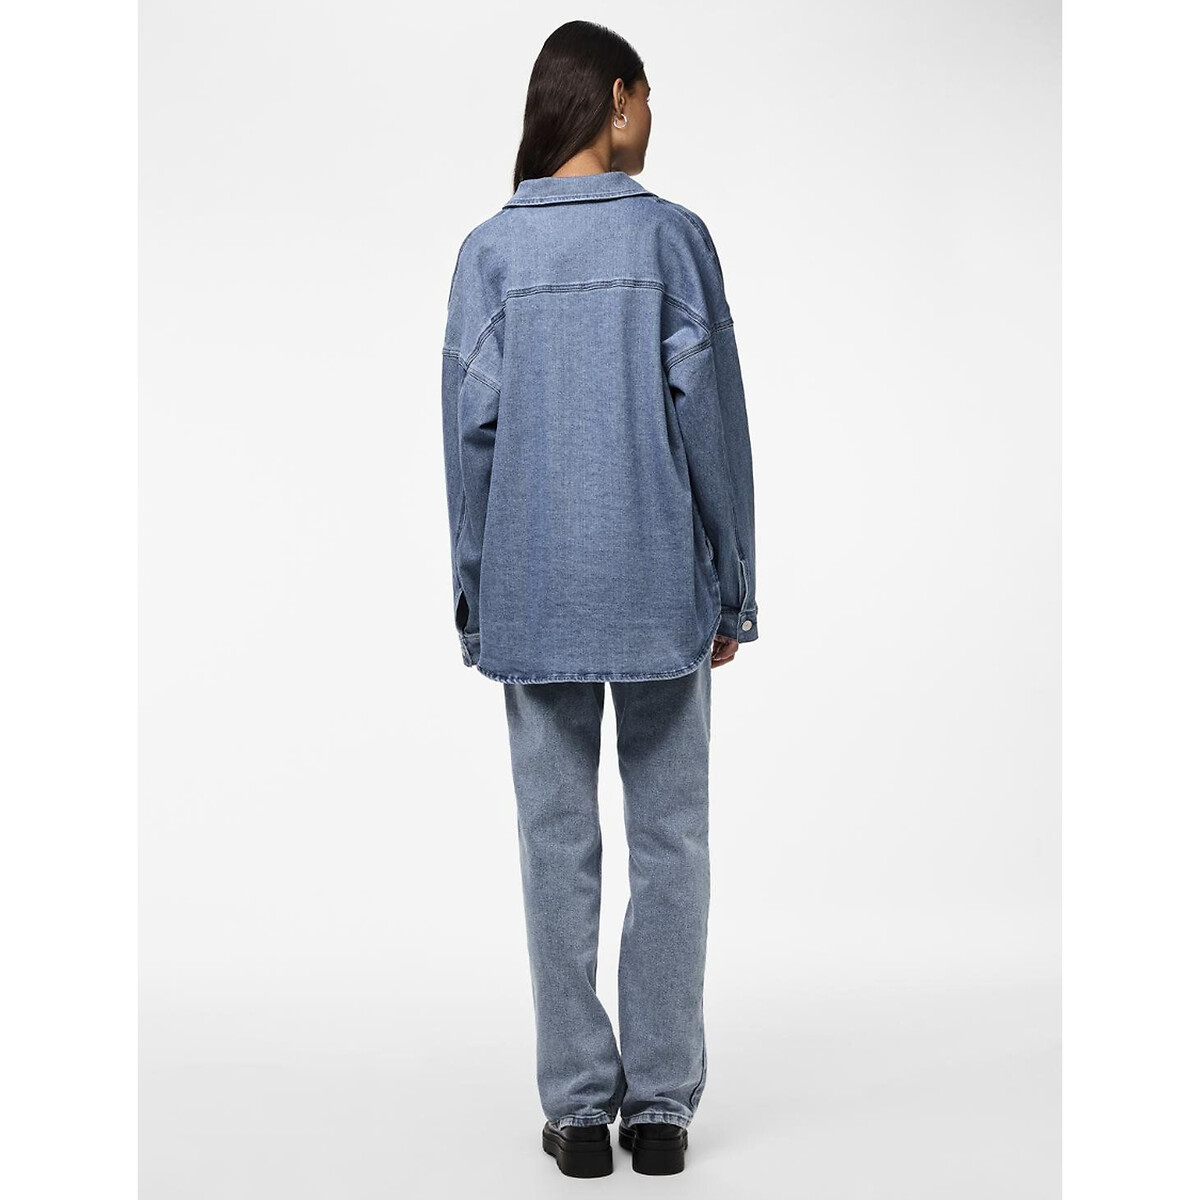 Куртка из джинсовой ткани средней длины  L синий LaRedoute, размер L - фото 4